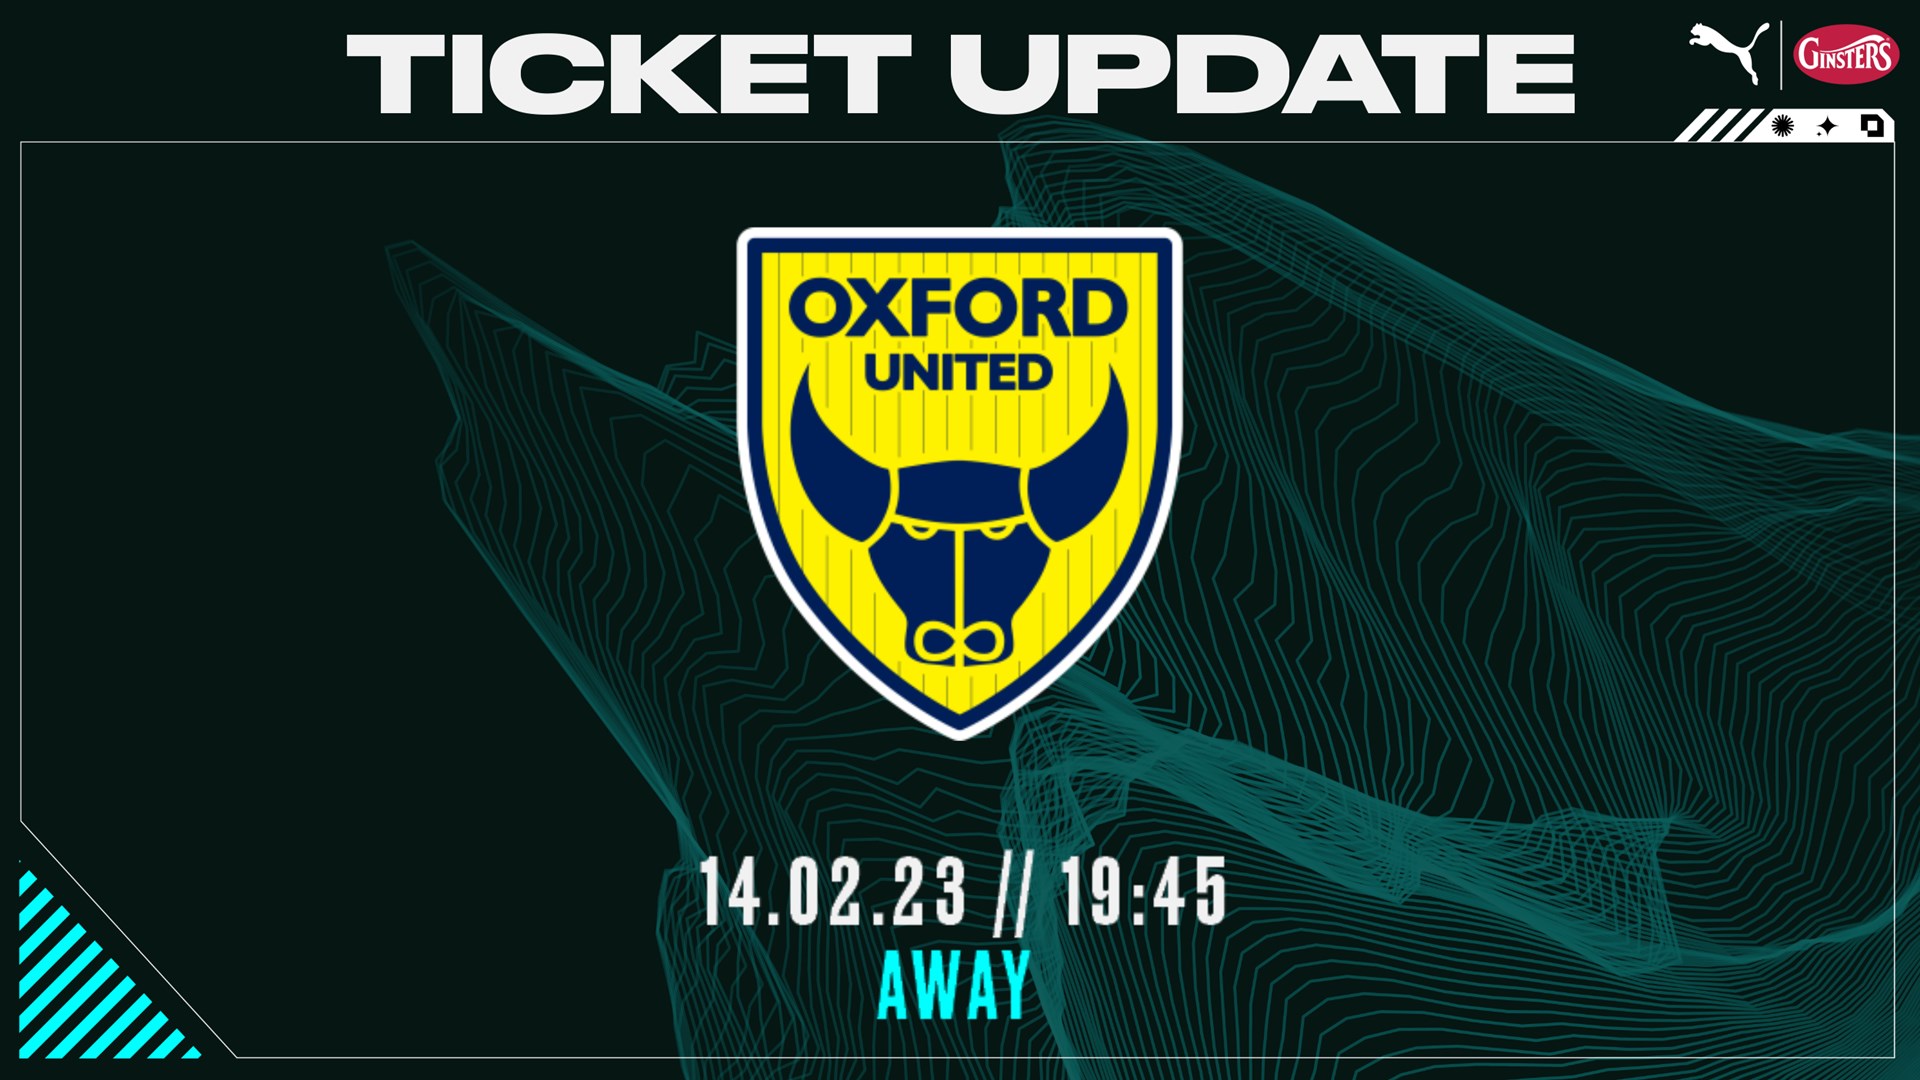 Oxford Tickets Update